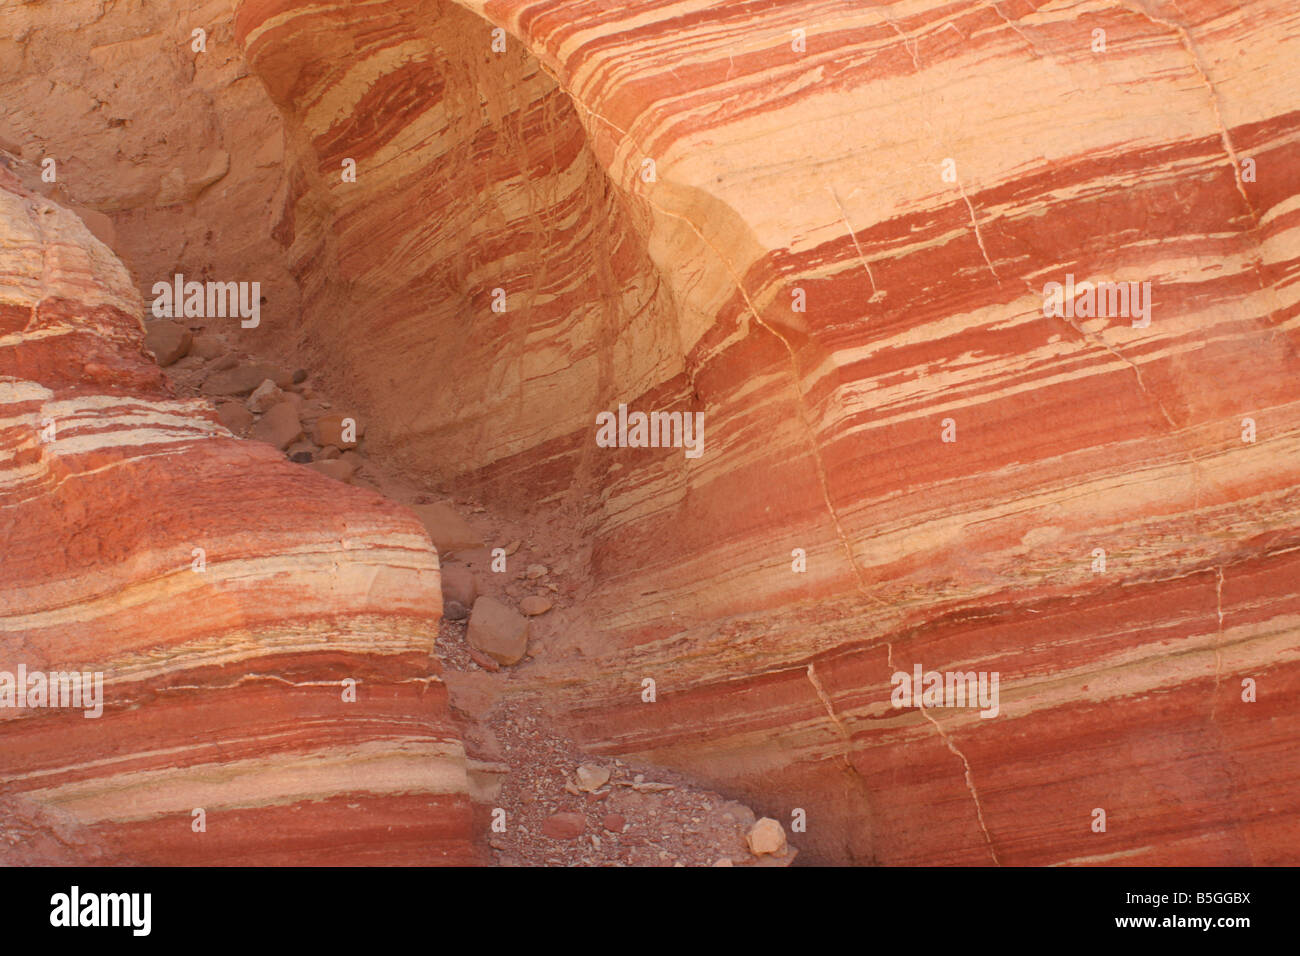 Israele Amir mountain Geologia strati nella roccia Foto Stock